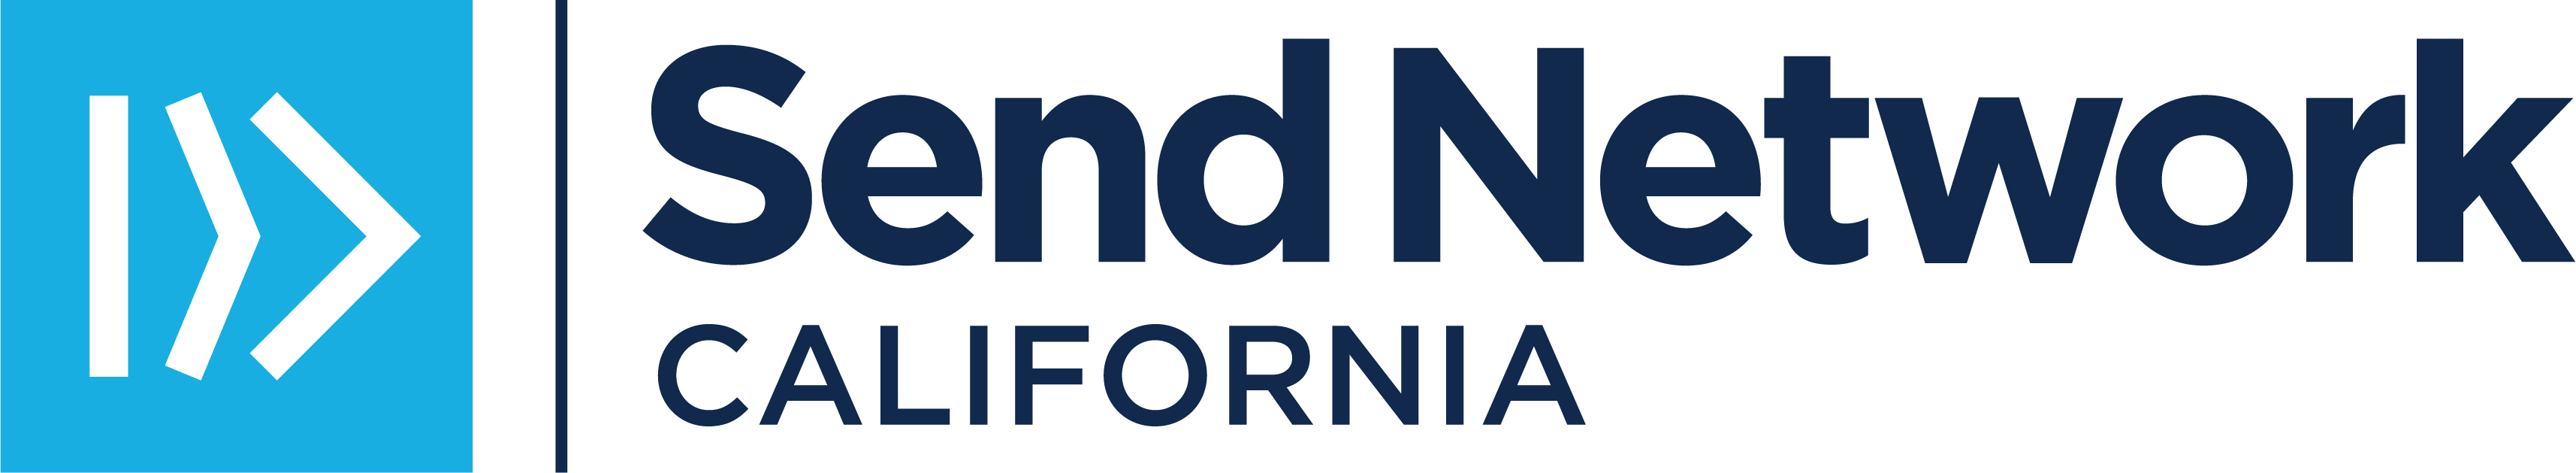 SN California Logo_BlueNavy